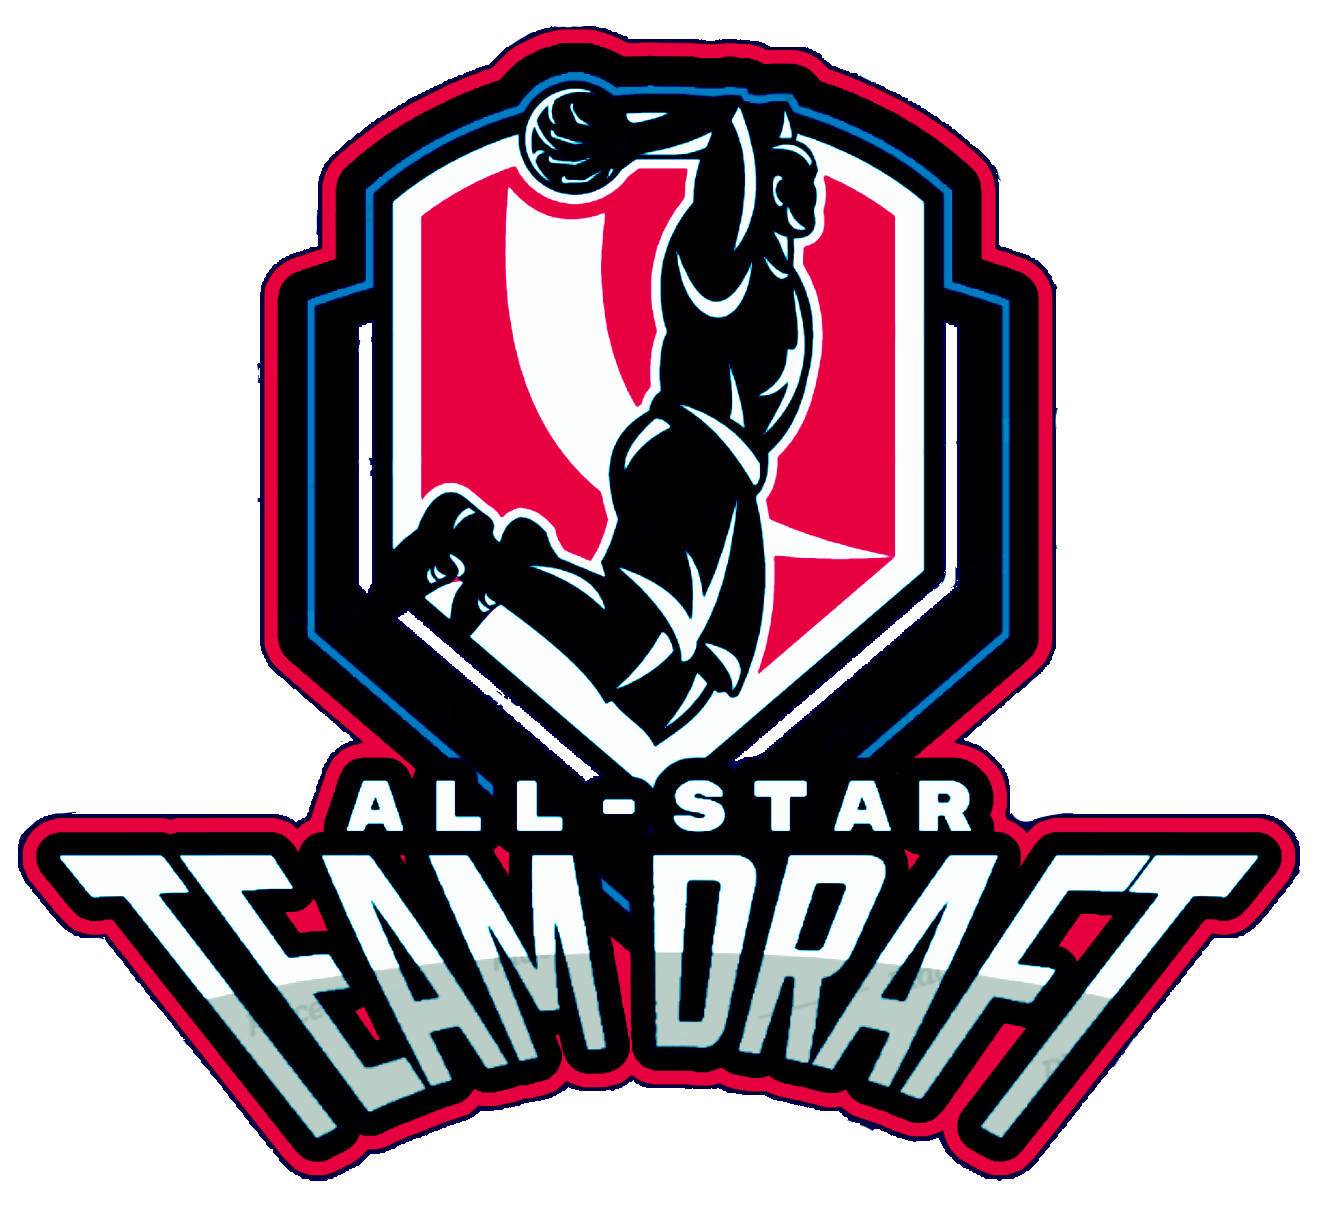 AllStar Team Draft Home